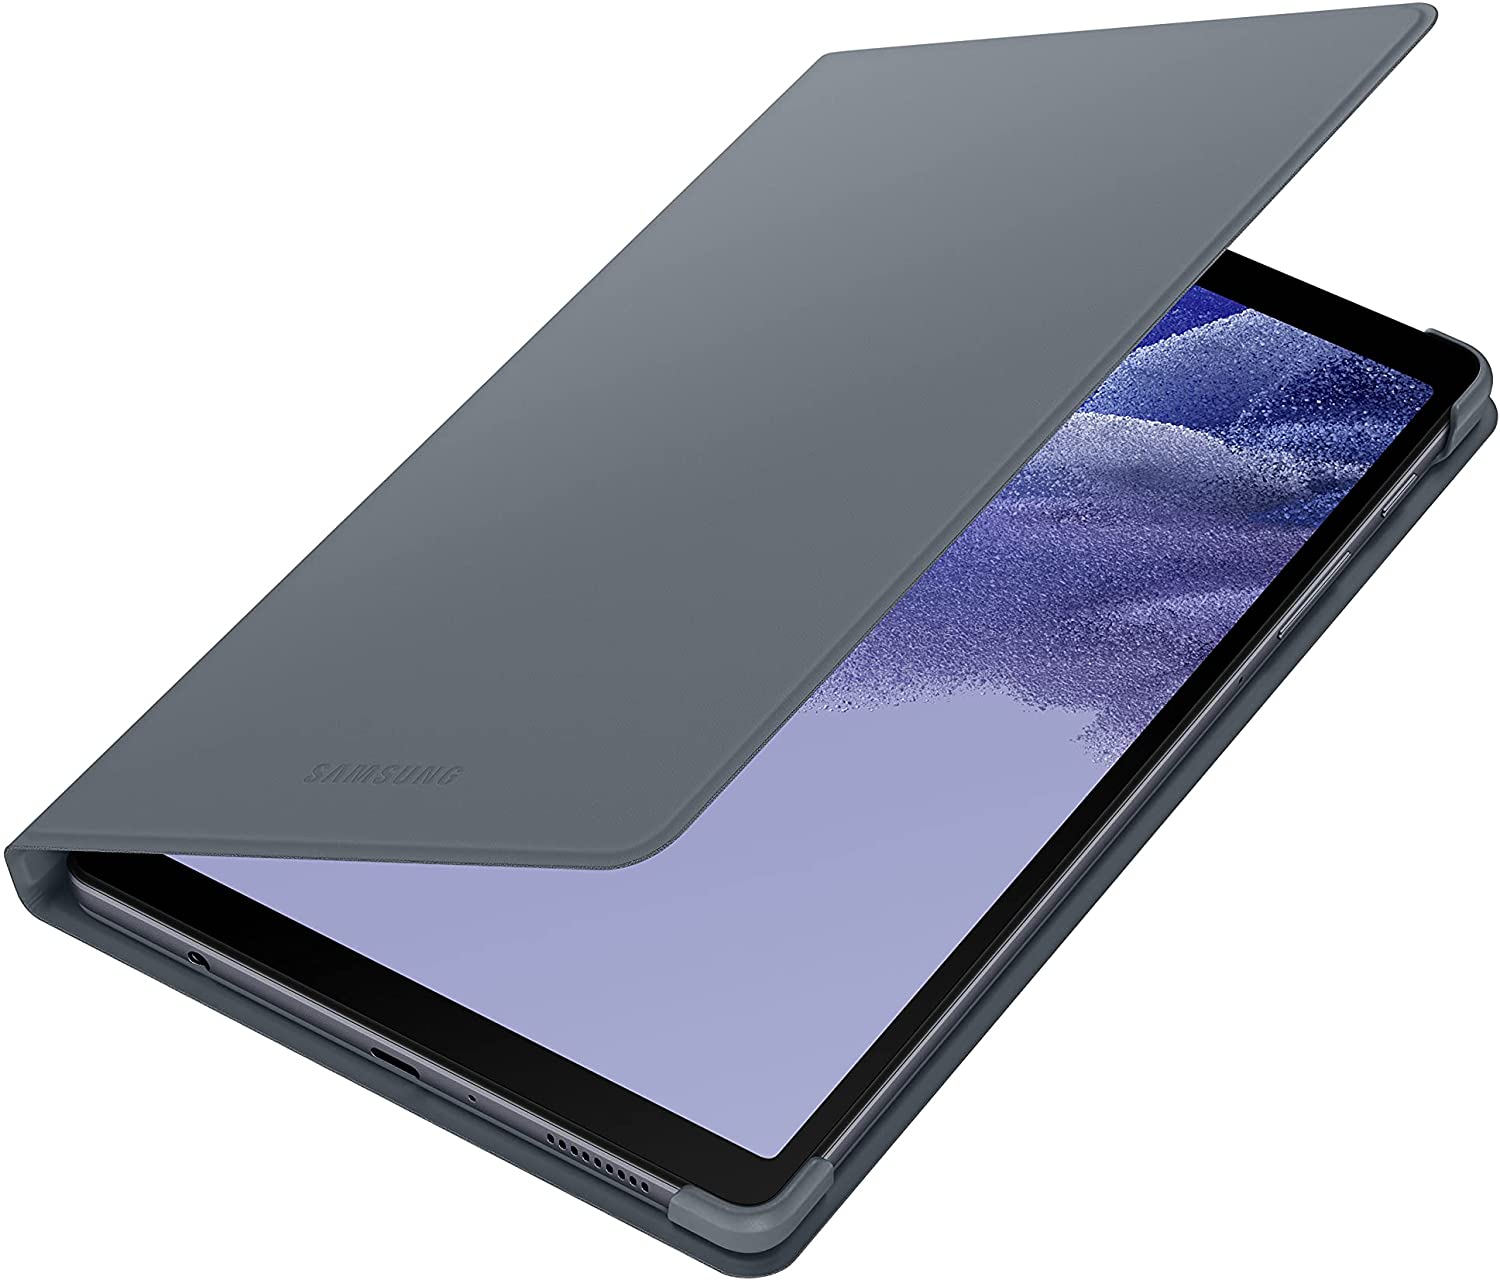 Samsung Galaxy T220 Tab A7 Lite (32GB Wi-Fi)